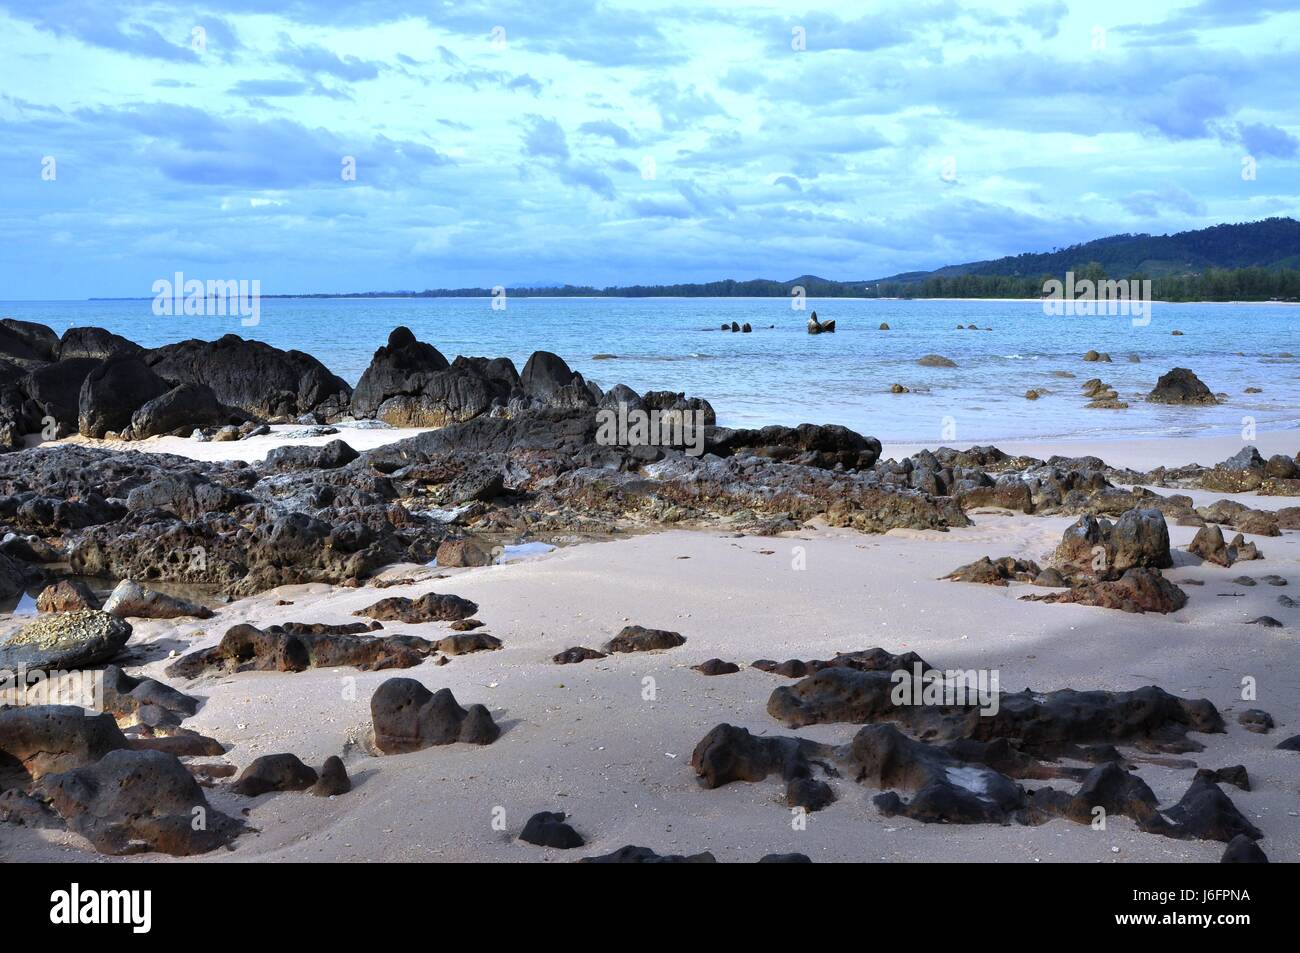 La plage de bord de plage d'Asie seashore rock Thaïlande mer océan eau eau salée Banque D'Images